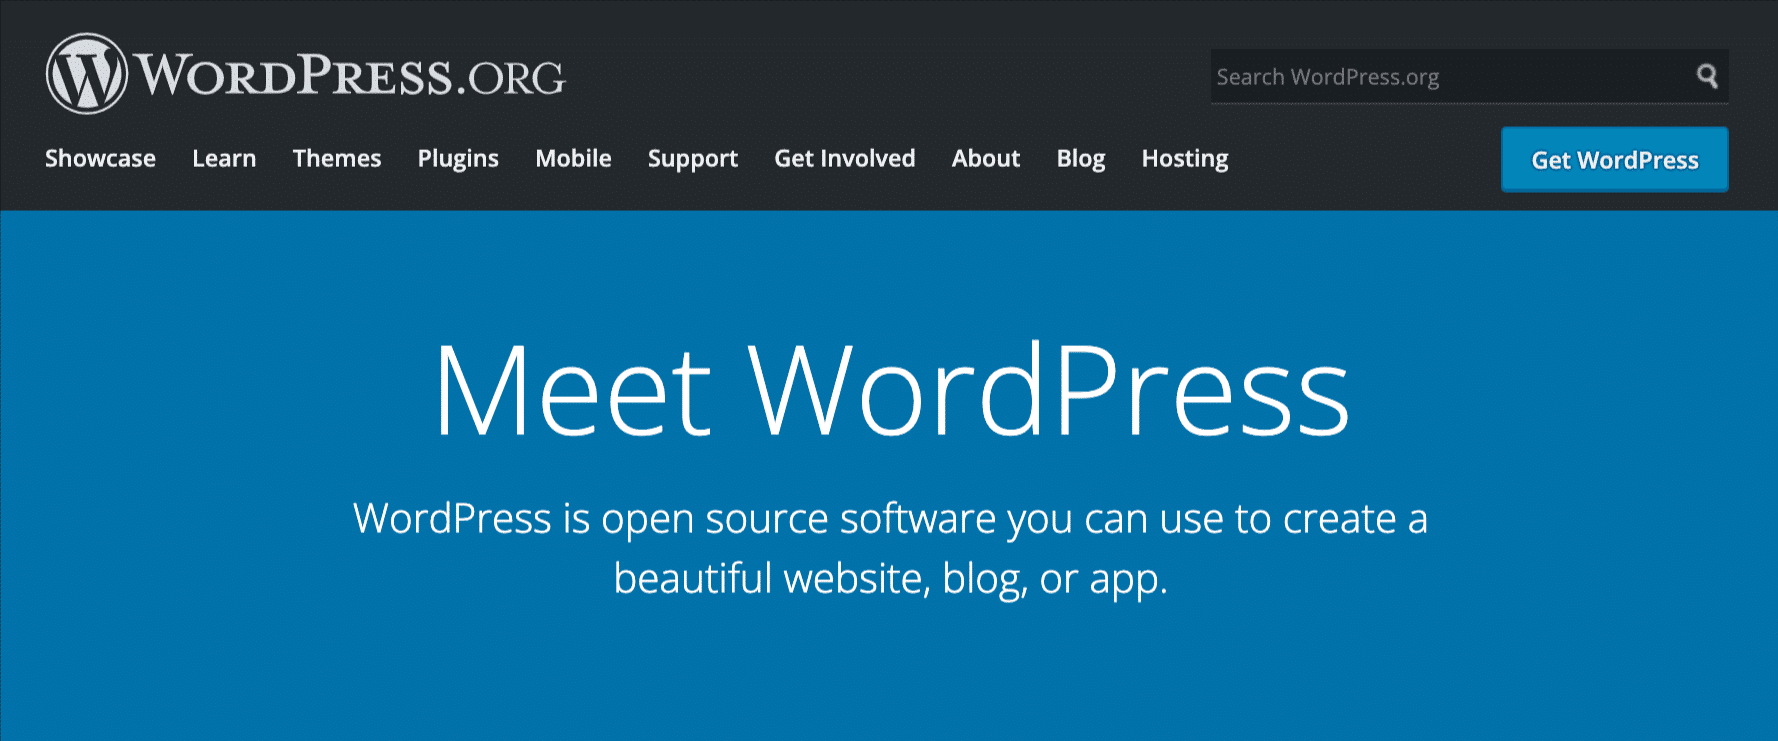 Página de inicio de WordPress.org.